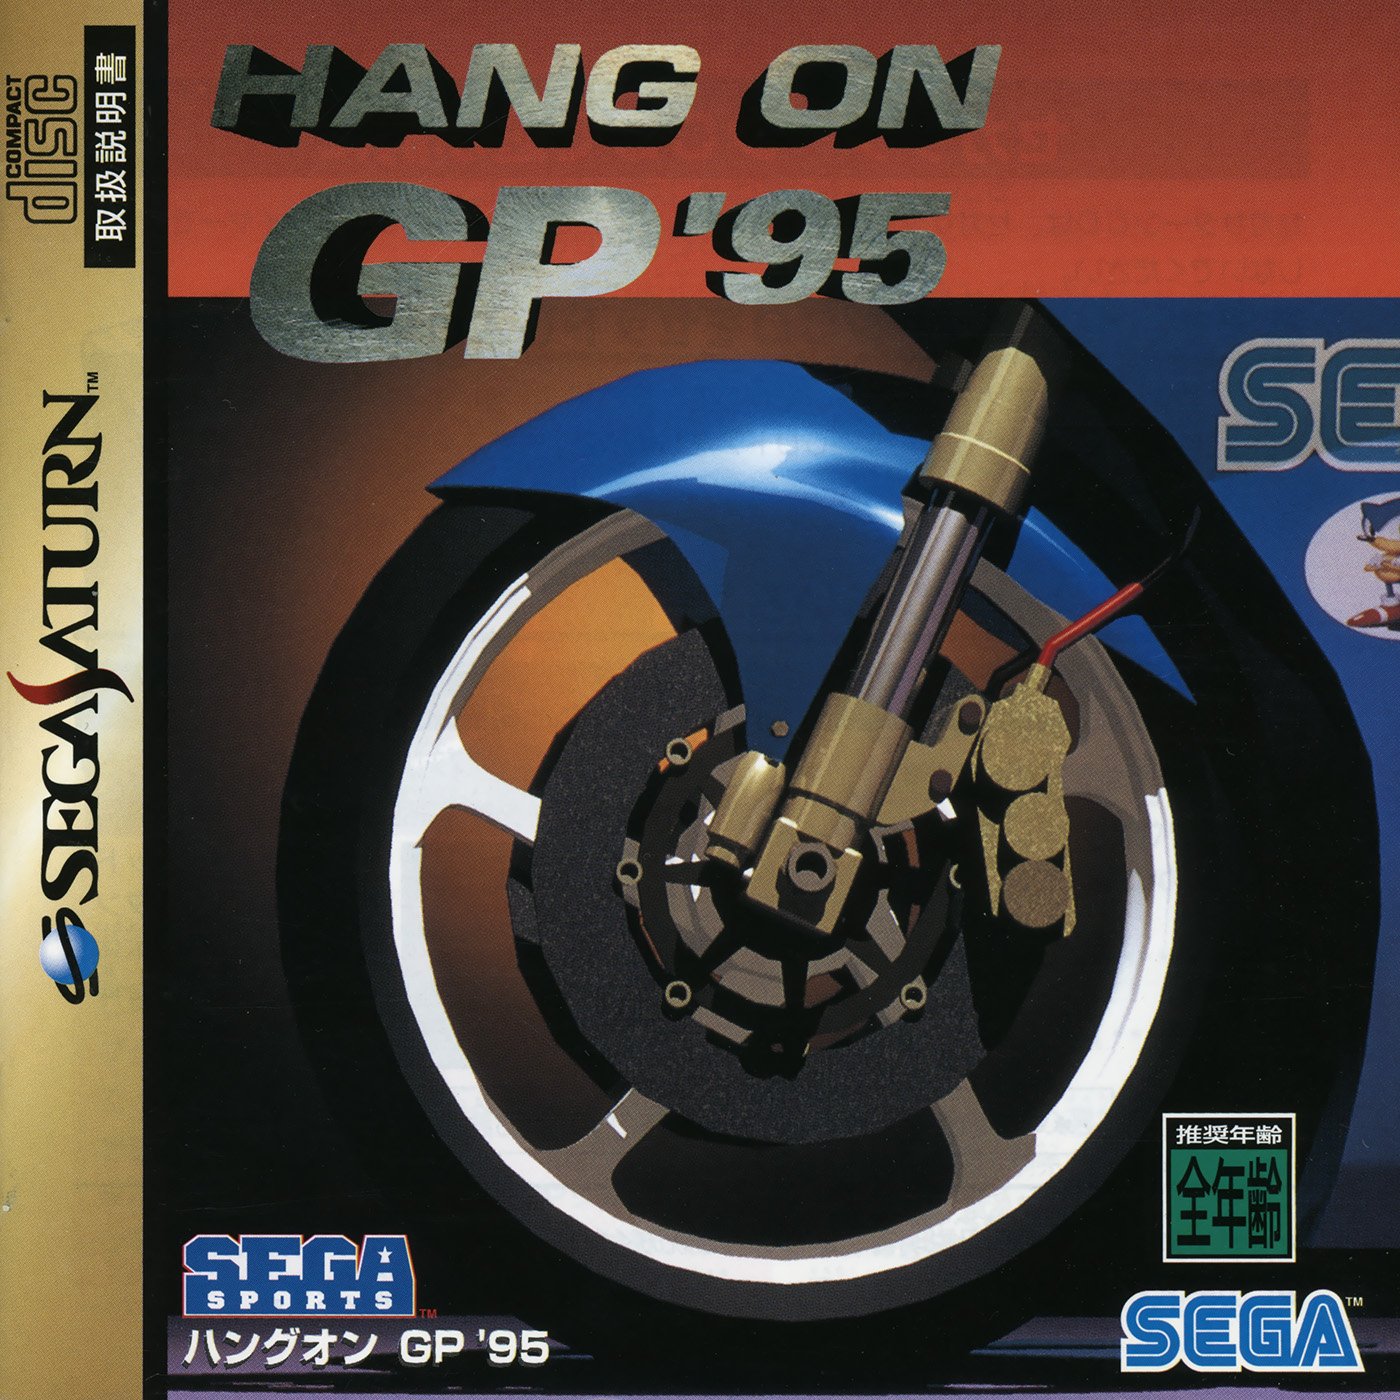 Hang-On GP '95